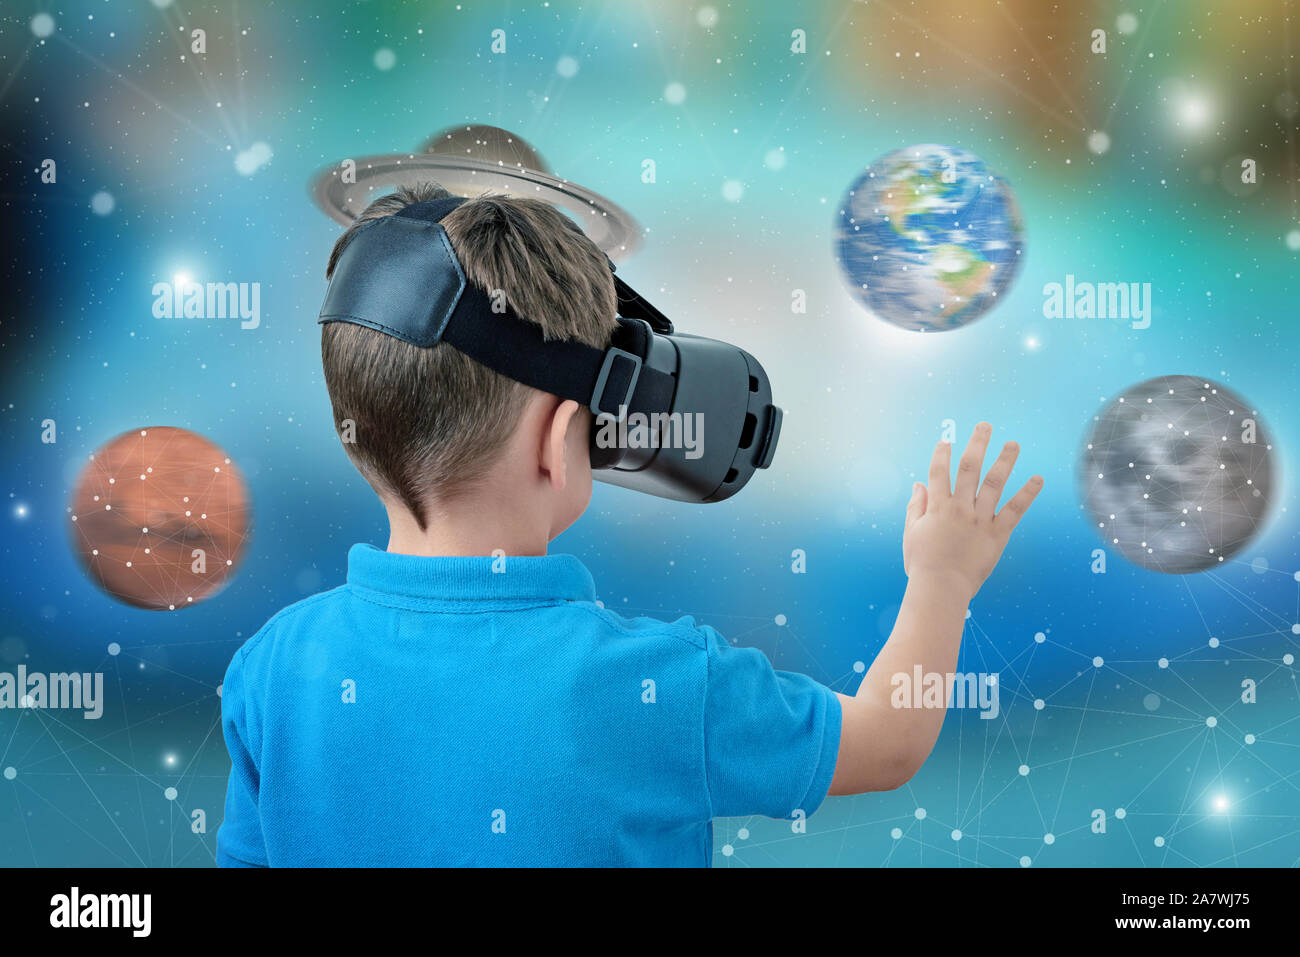 Garçon avec des lunettes de réalité virtuelle planètes tourner concept. Le plaisir et l'apprentissage avec des applications et dispositifs de réalité virtuelle. Banque D'Images